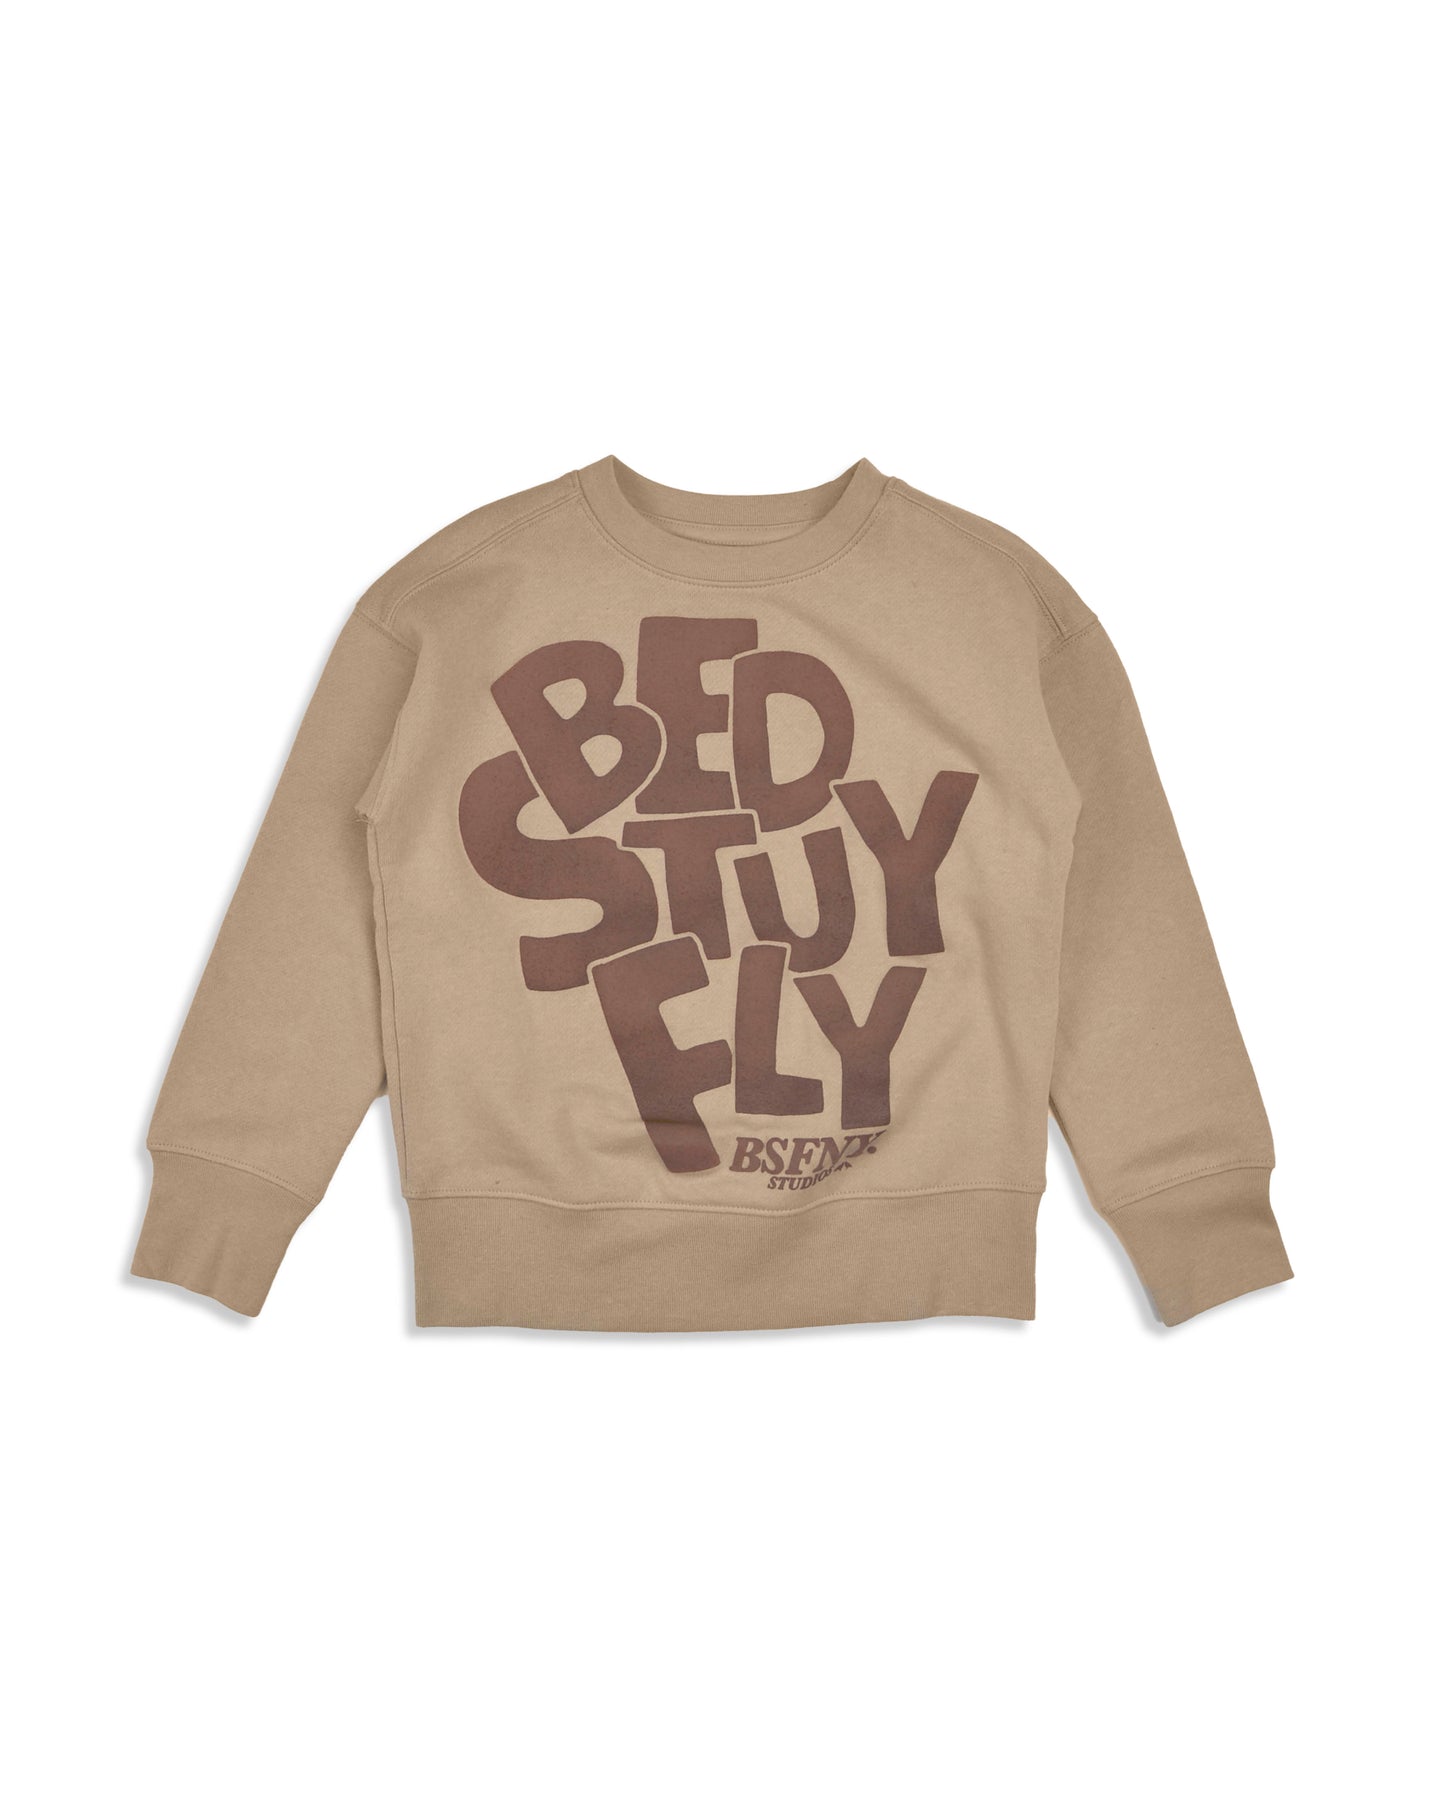 Bedstuyfly Kids Studio Sweatsuit